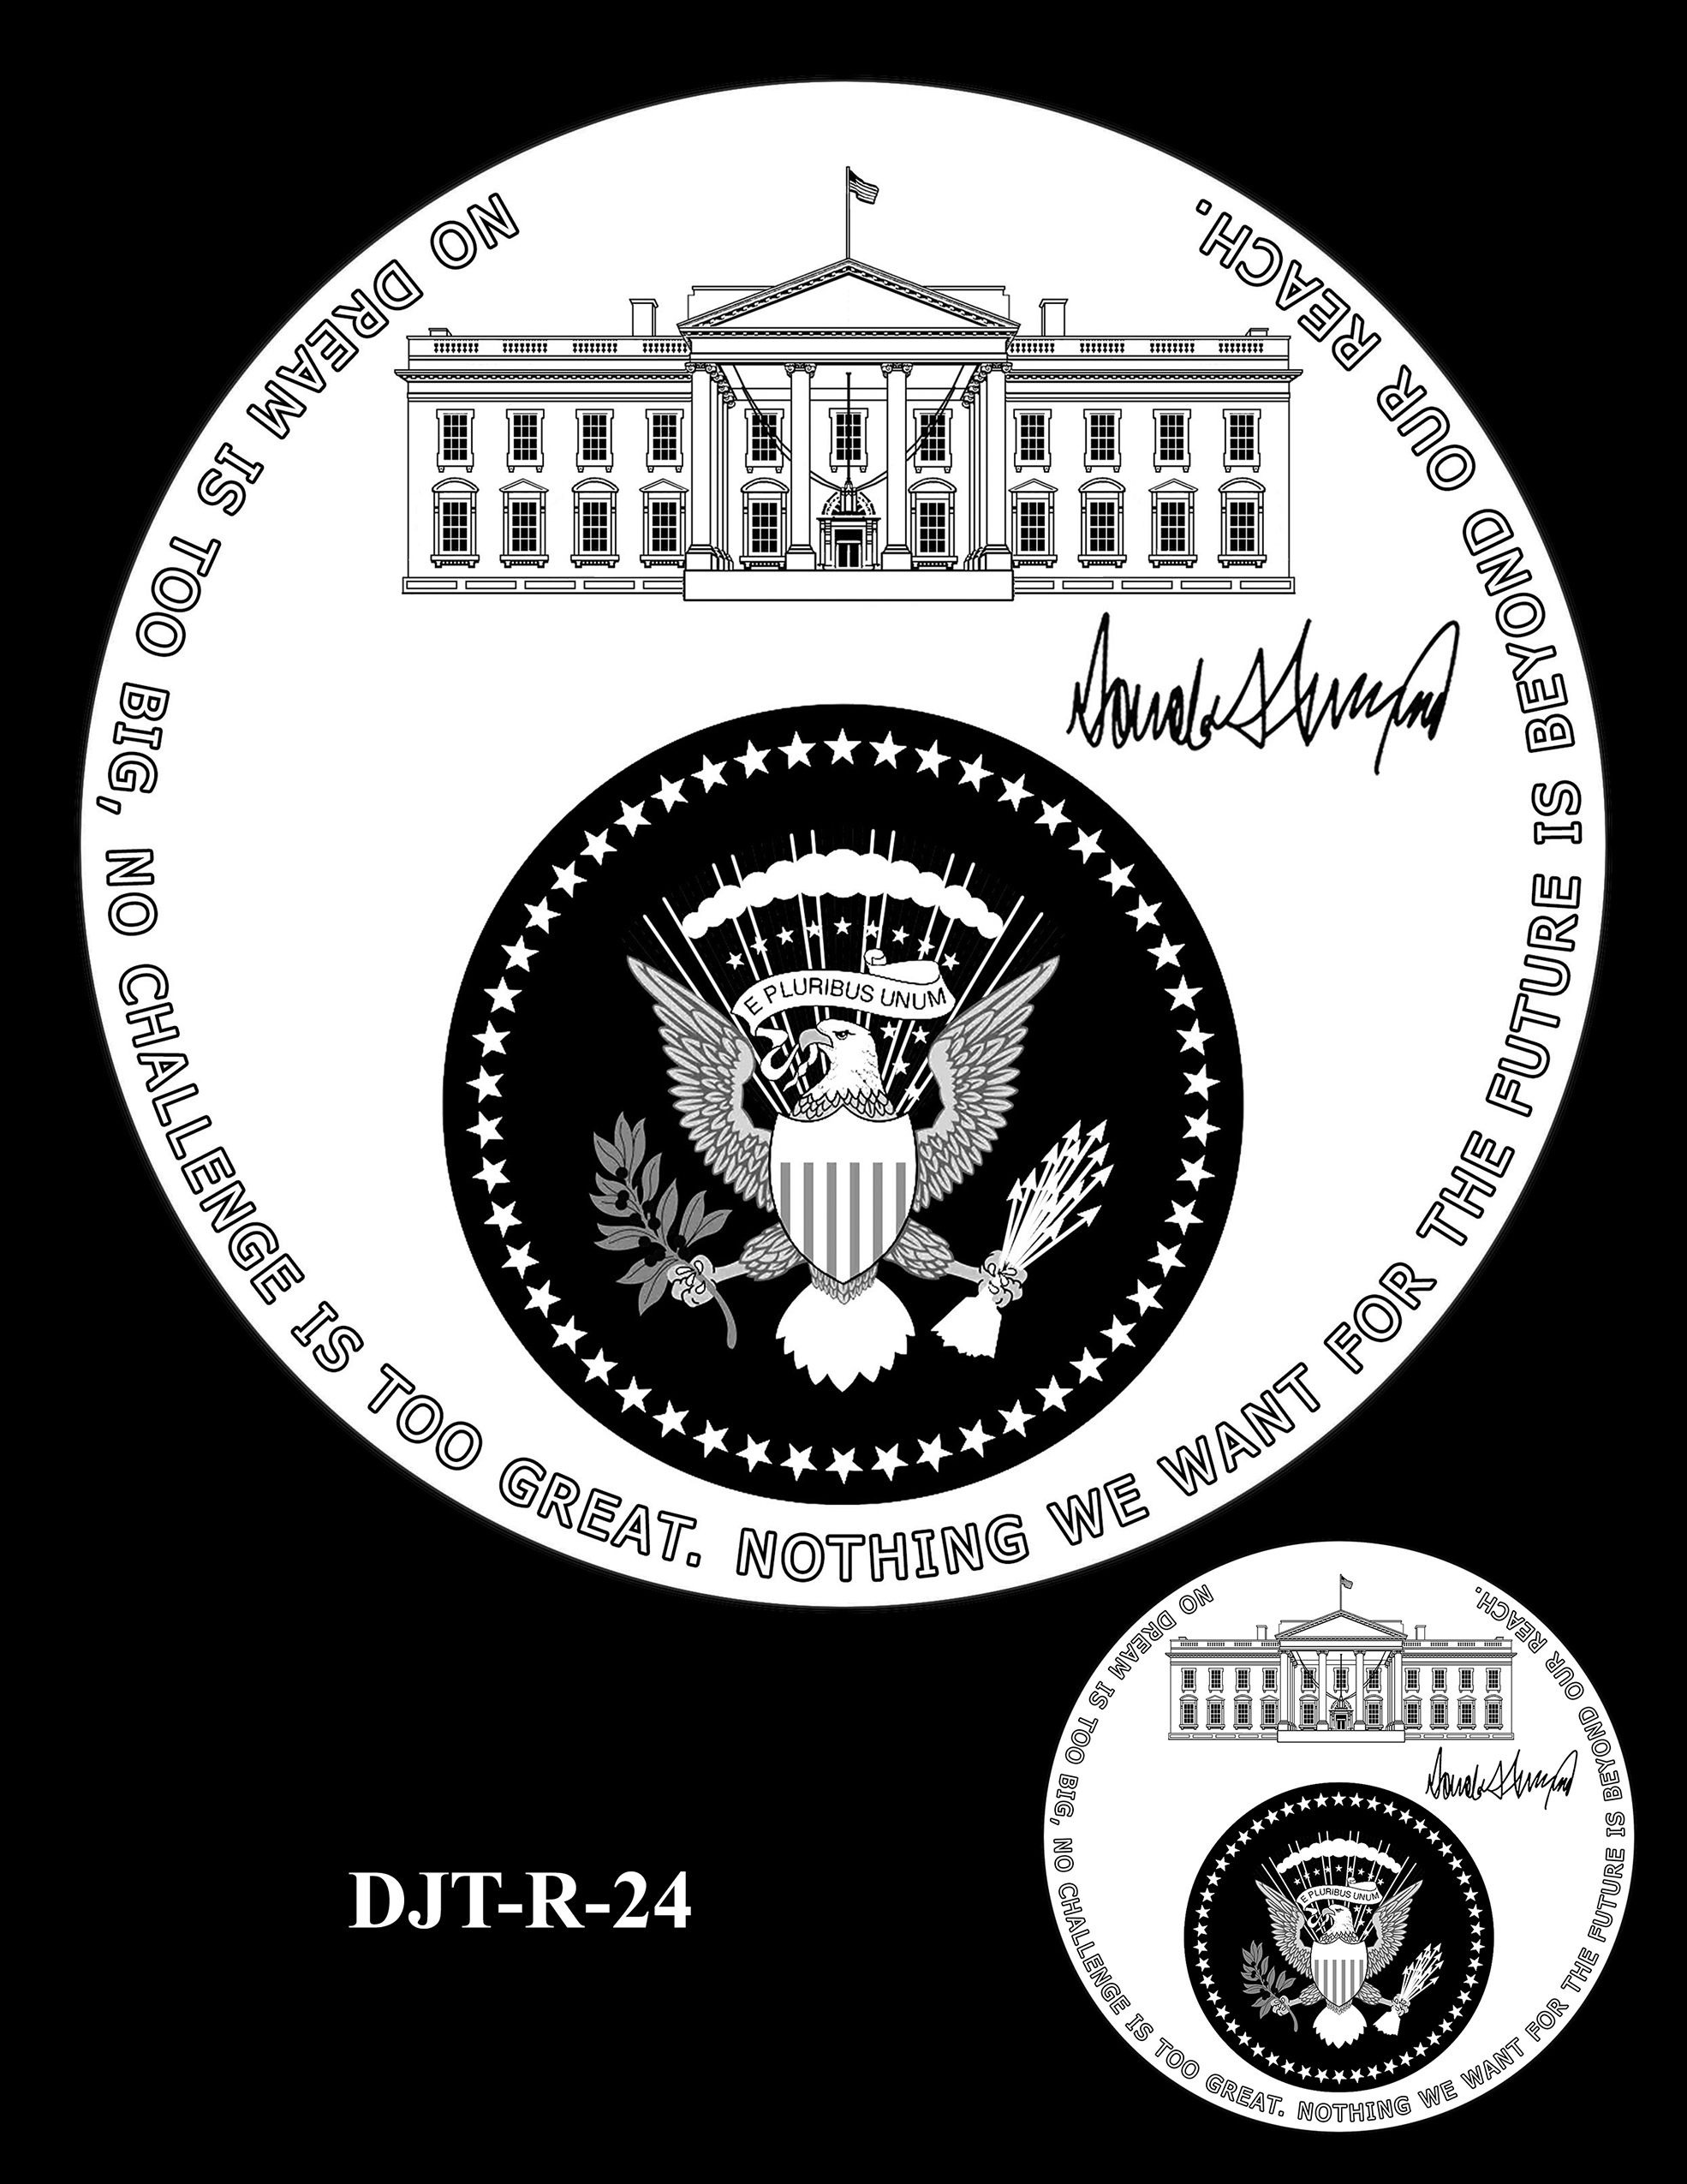 DJT-R-24 -- Donald J. Trump Presidential Medal